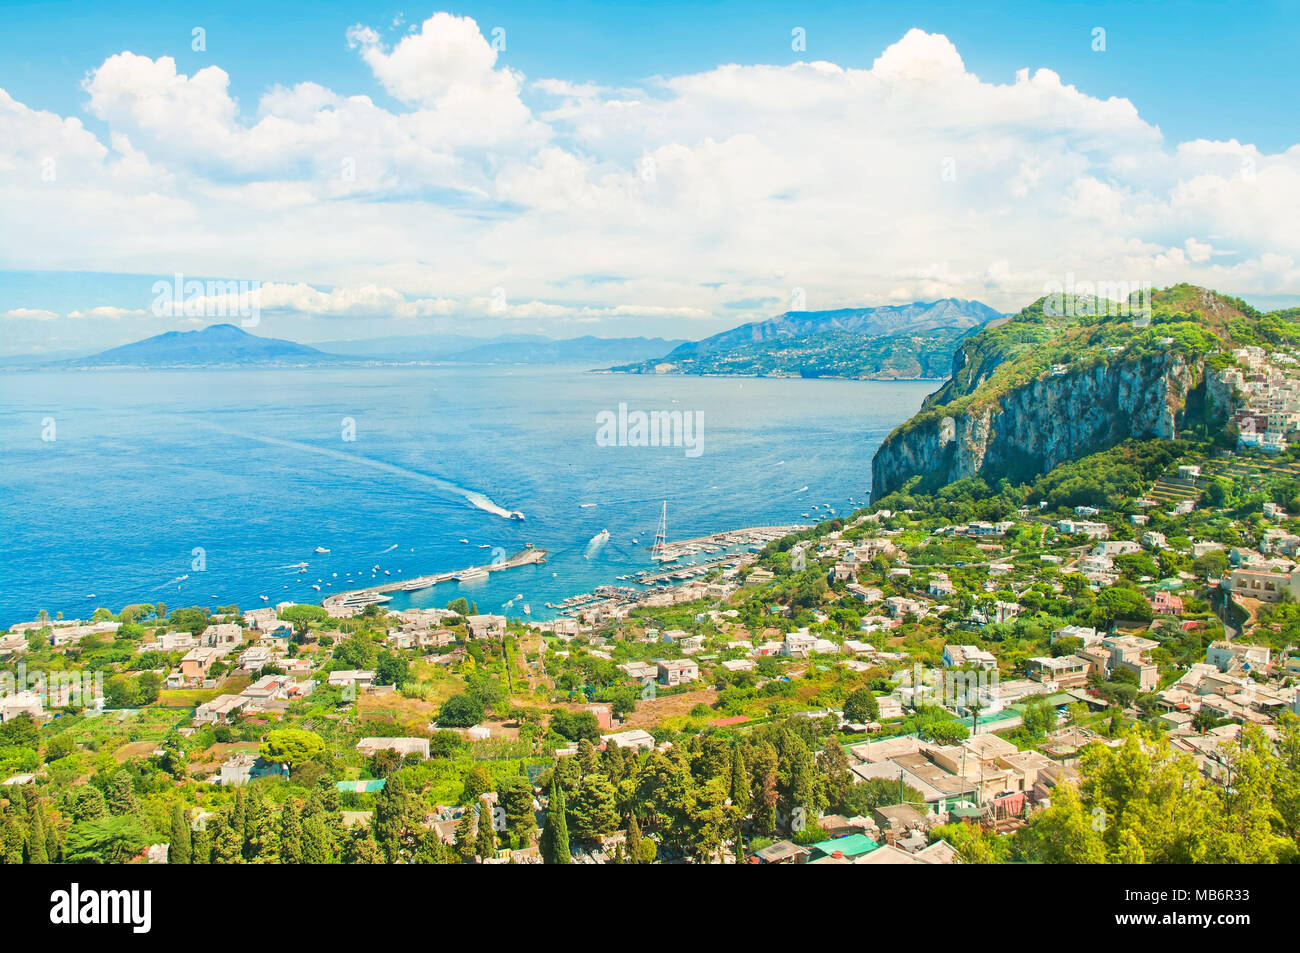 Belle vue aérienne du port de Marina Grande, bateaux et maisons sur l'île de Capri, avec le Vésuve en arrière-plan sur journée ensoleillée Banque D'Images